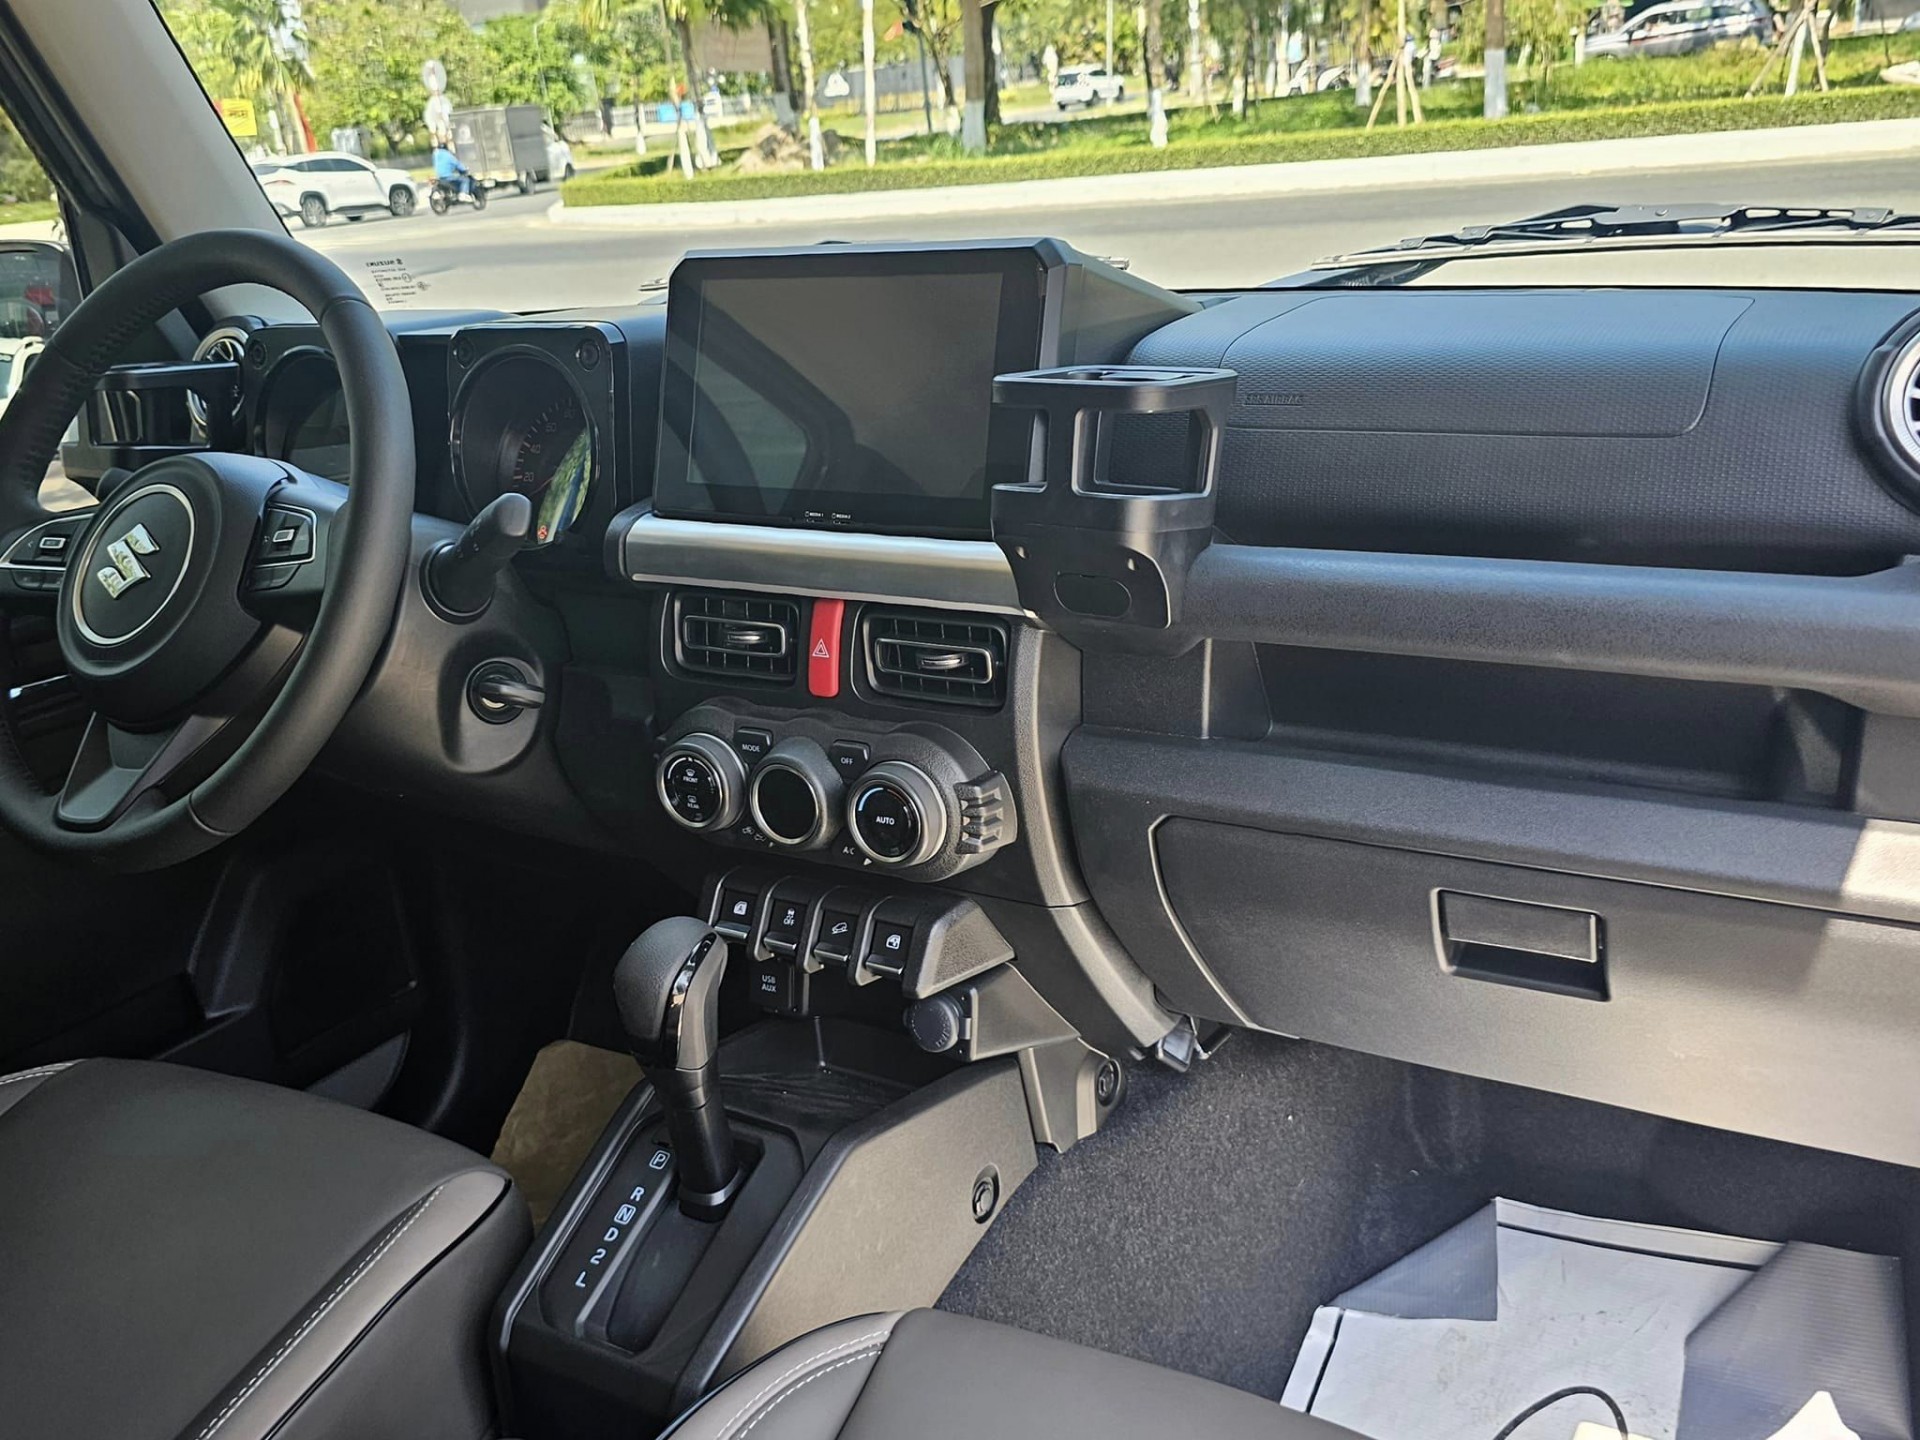 Chi tiết Suzuki Jimny 'hô biến' thành Mercedes-AMG G63 tại Việt Nam